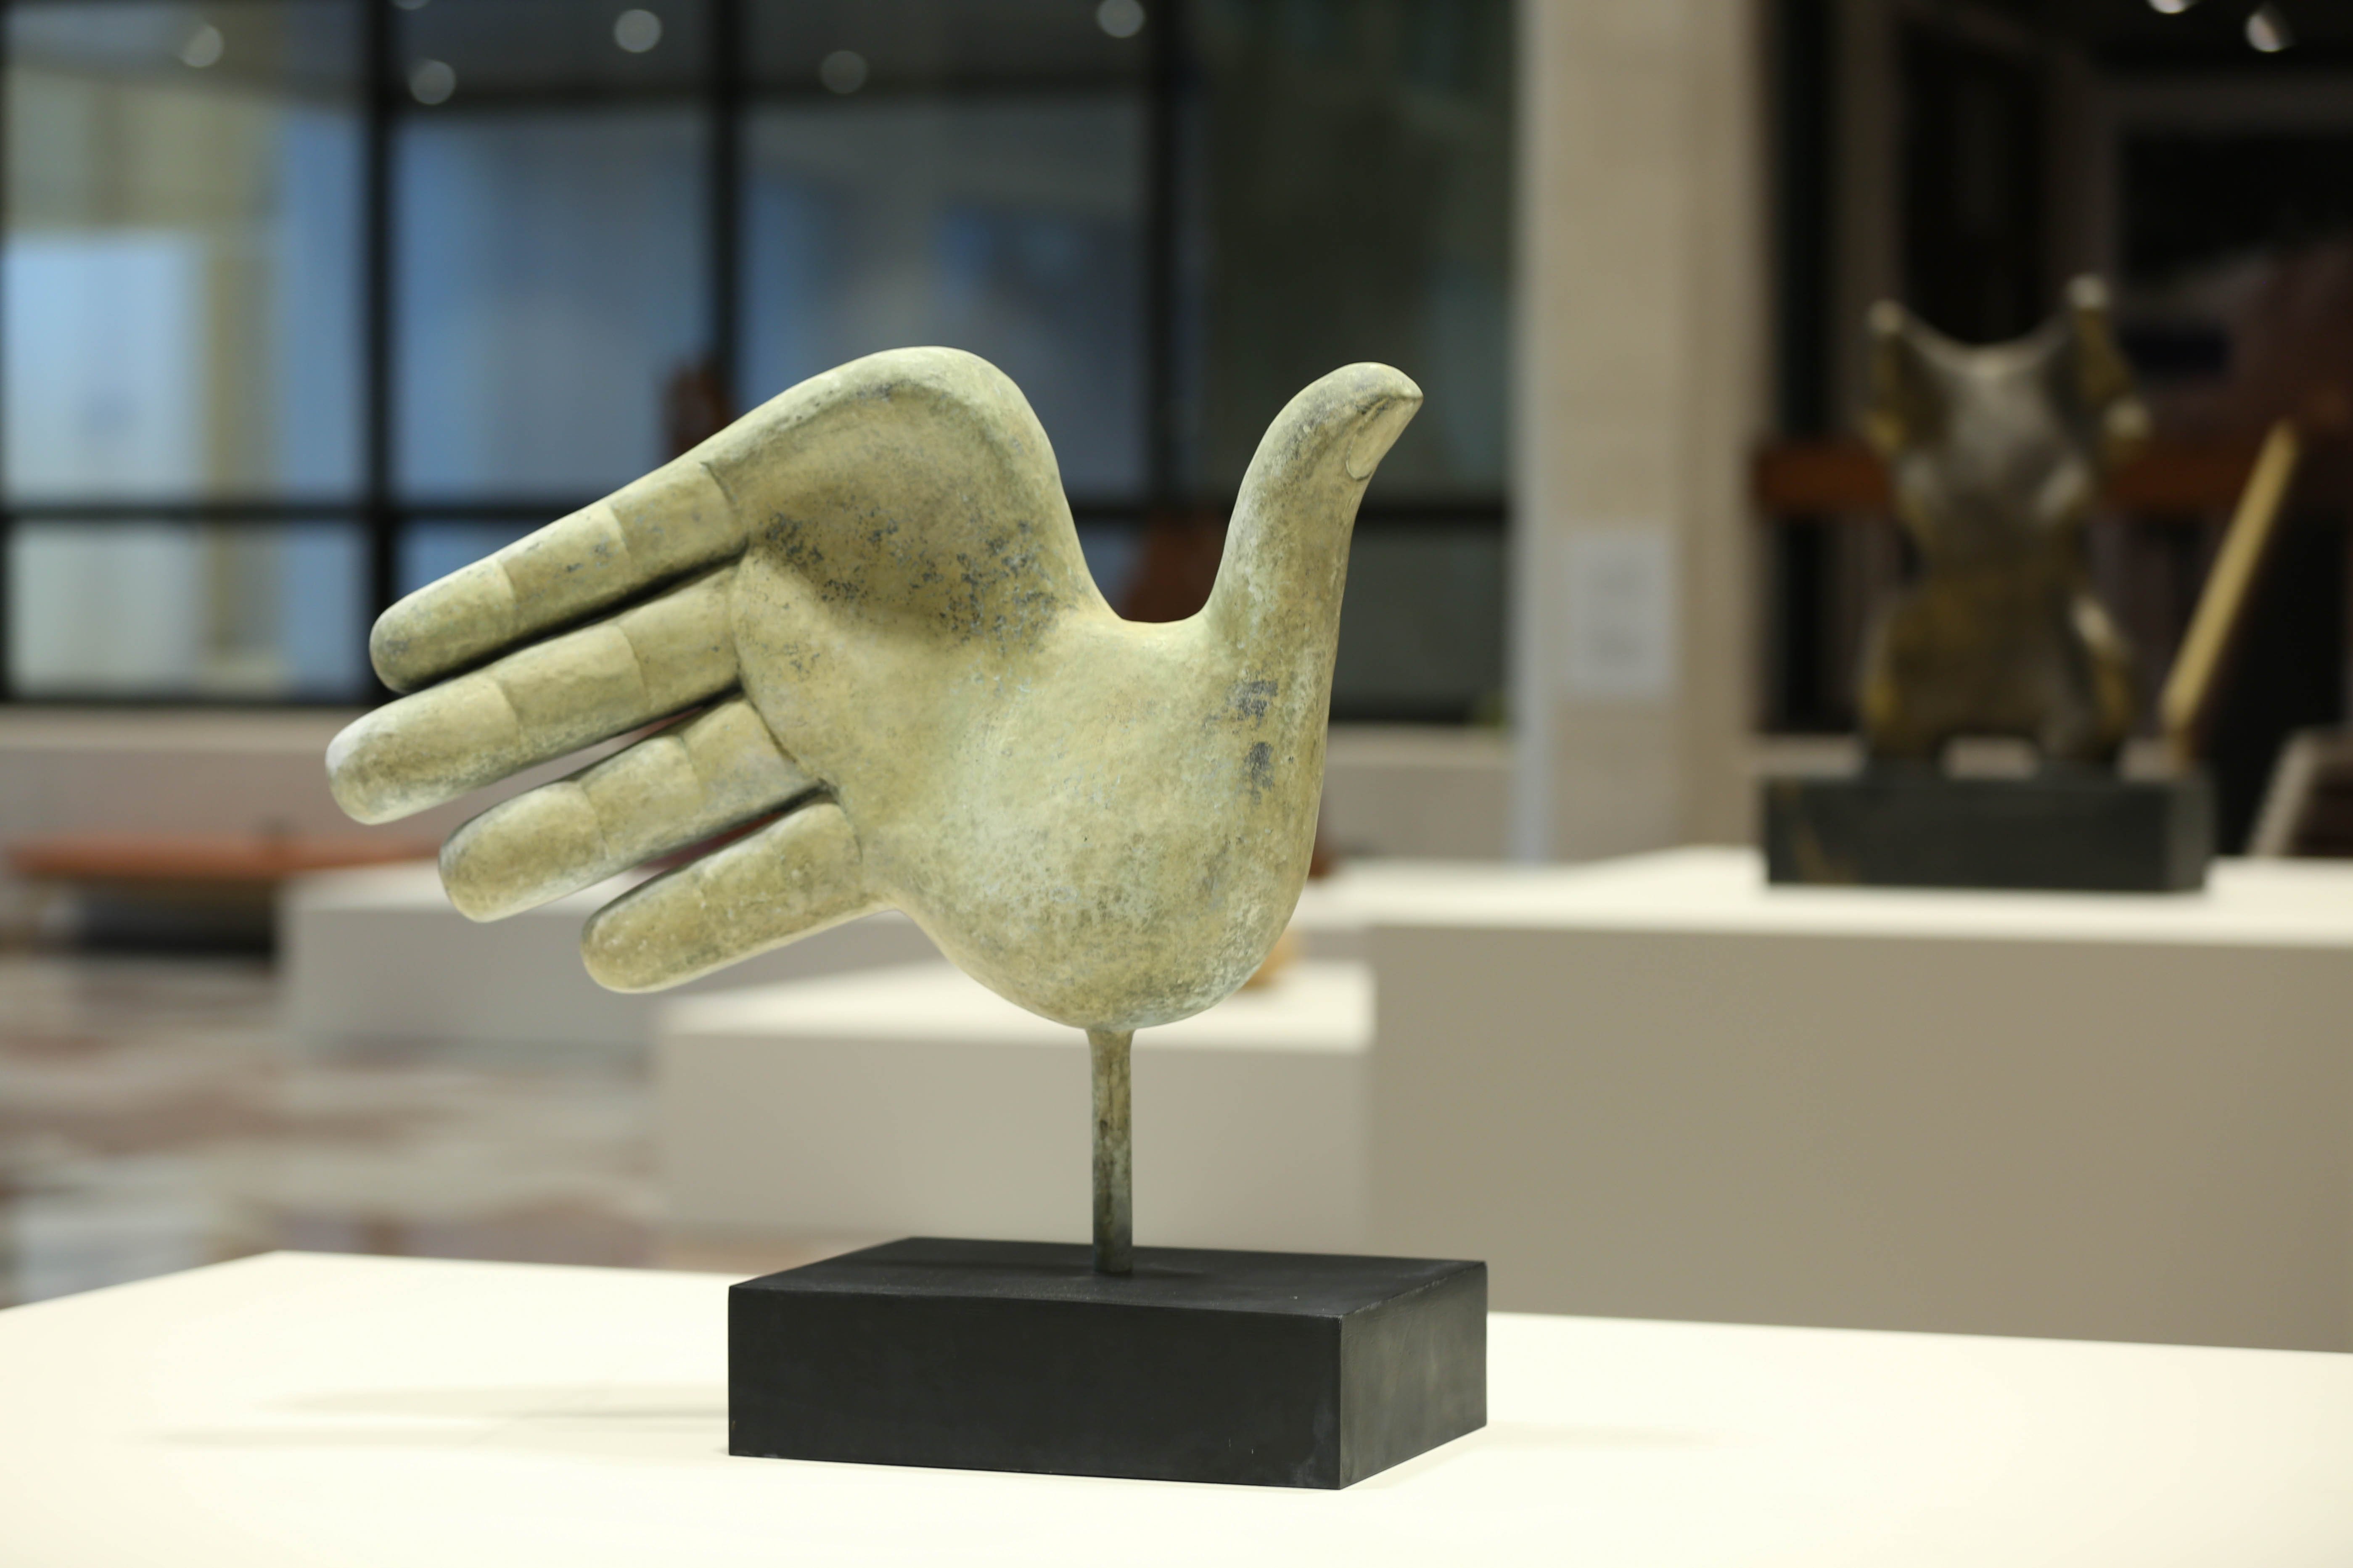 تمثال ليد بأصابع معوجَّة في المجمّع الثقافي في قصر الحصن